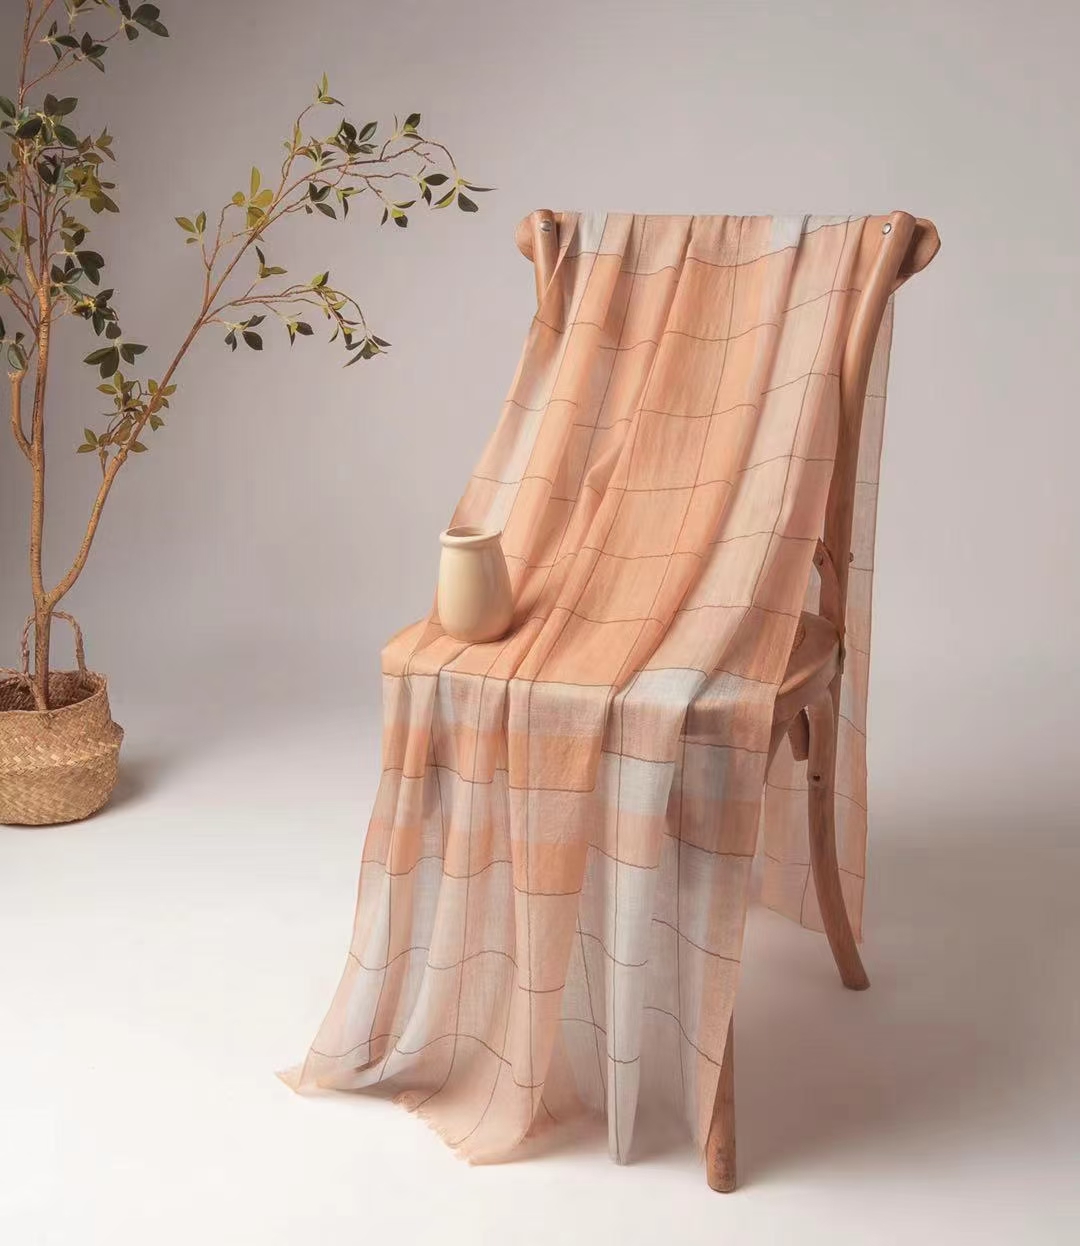 Cashmere worsted shawl